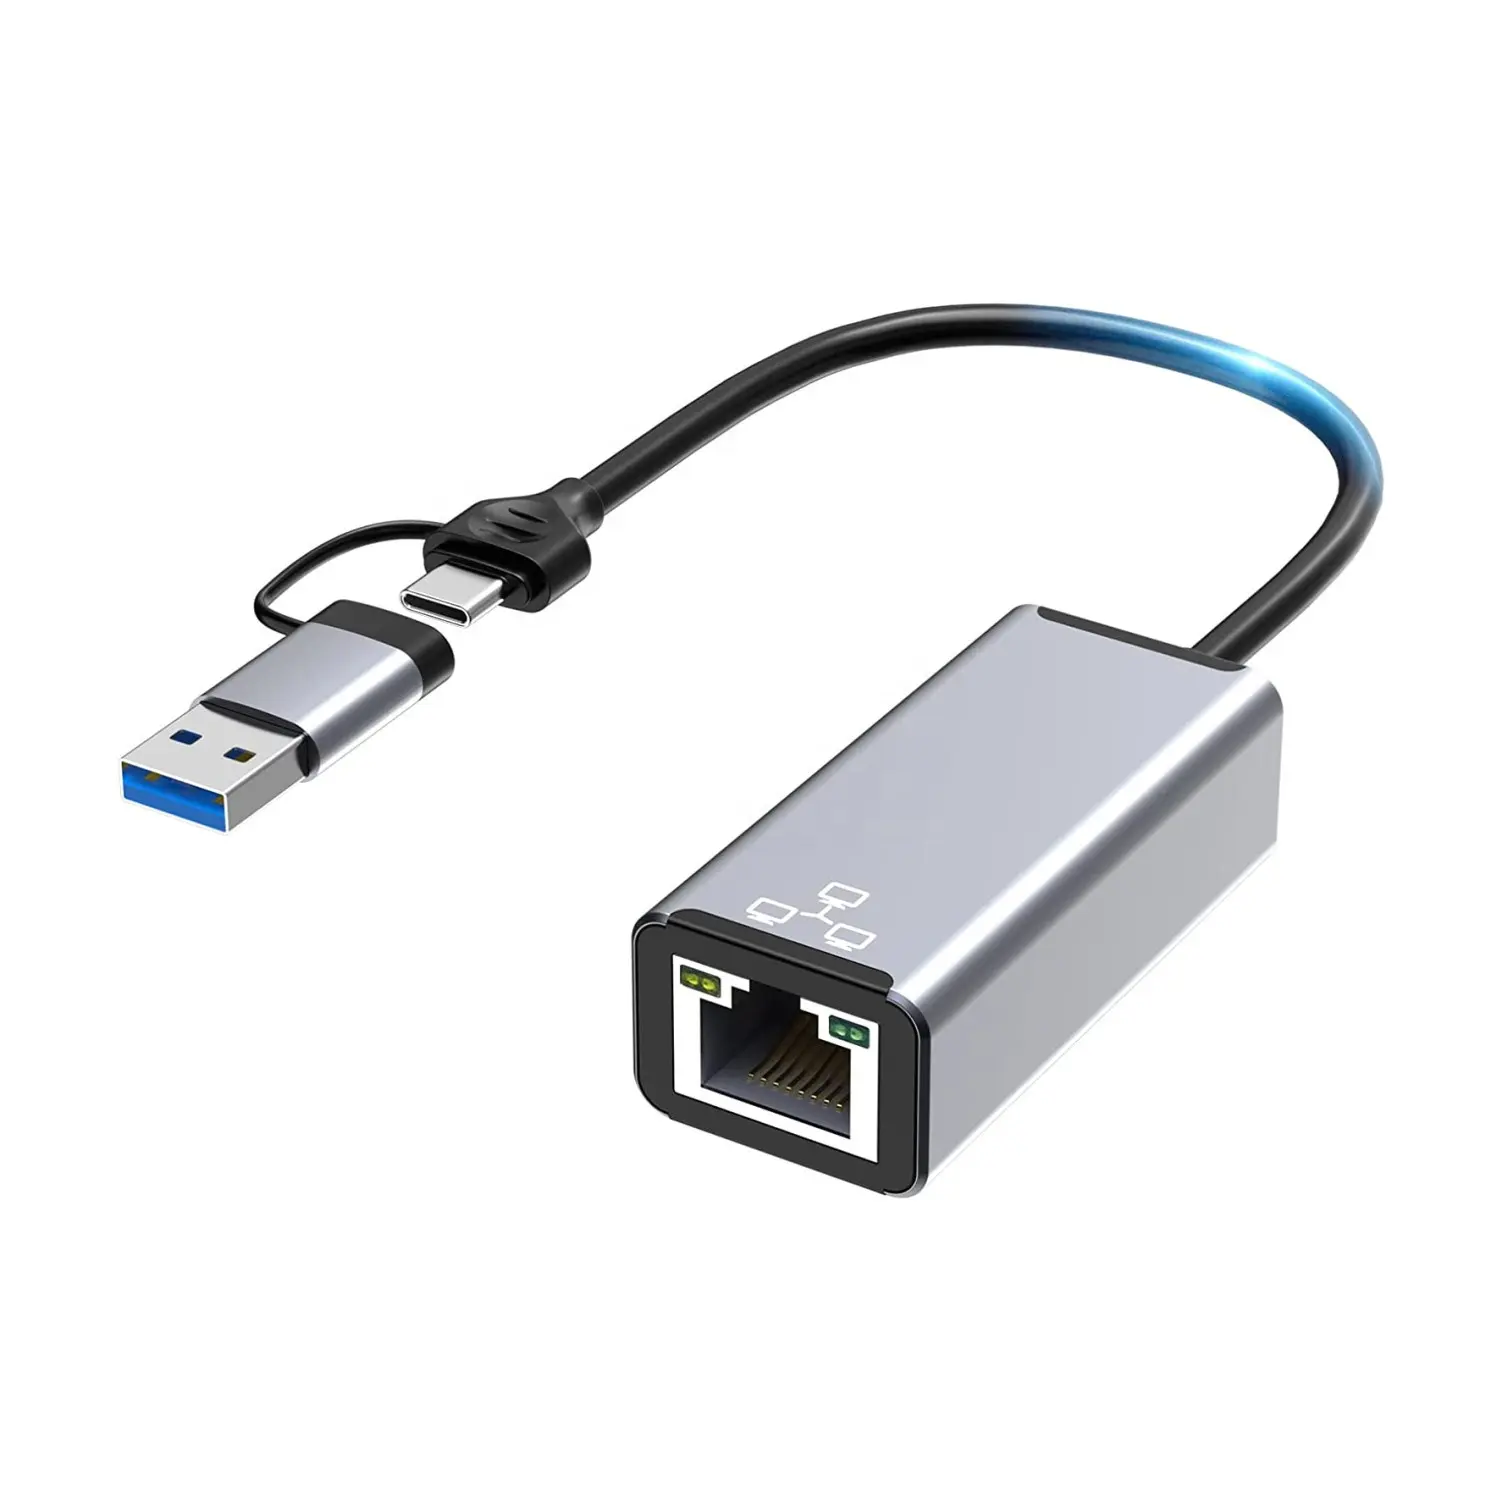 2 In 1 USB A dan USB C Ke Ethernet RJ45 10 / 100 / 1000 Gigabit LAN Adaptor Jaringan untuk MacBook Pro / Air , iPad Pro dan Banyak Lagi